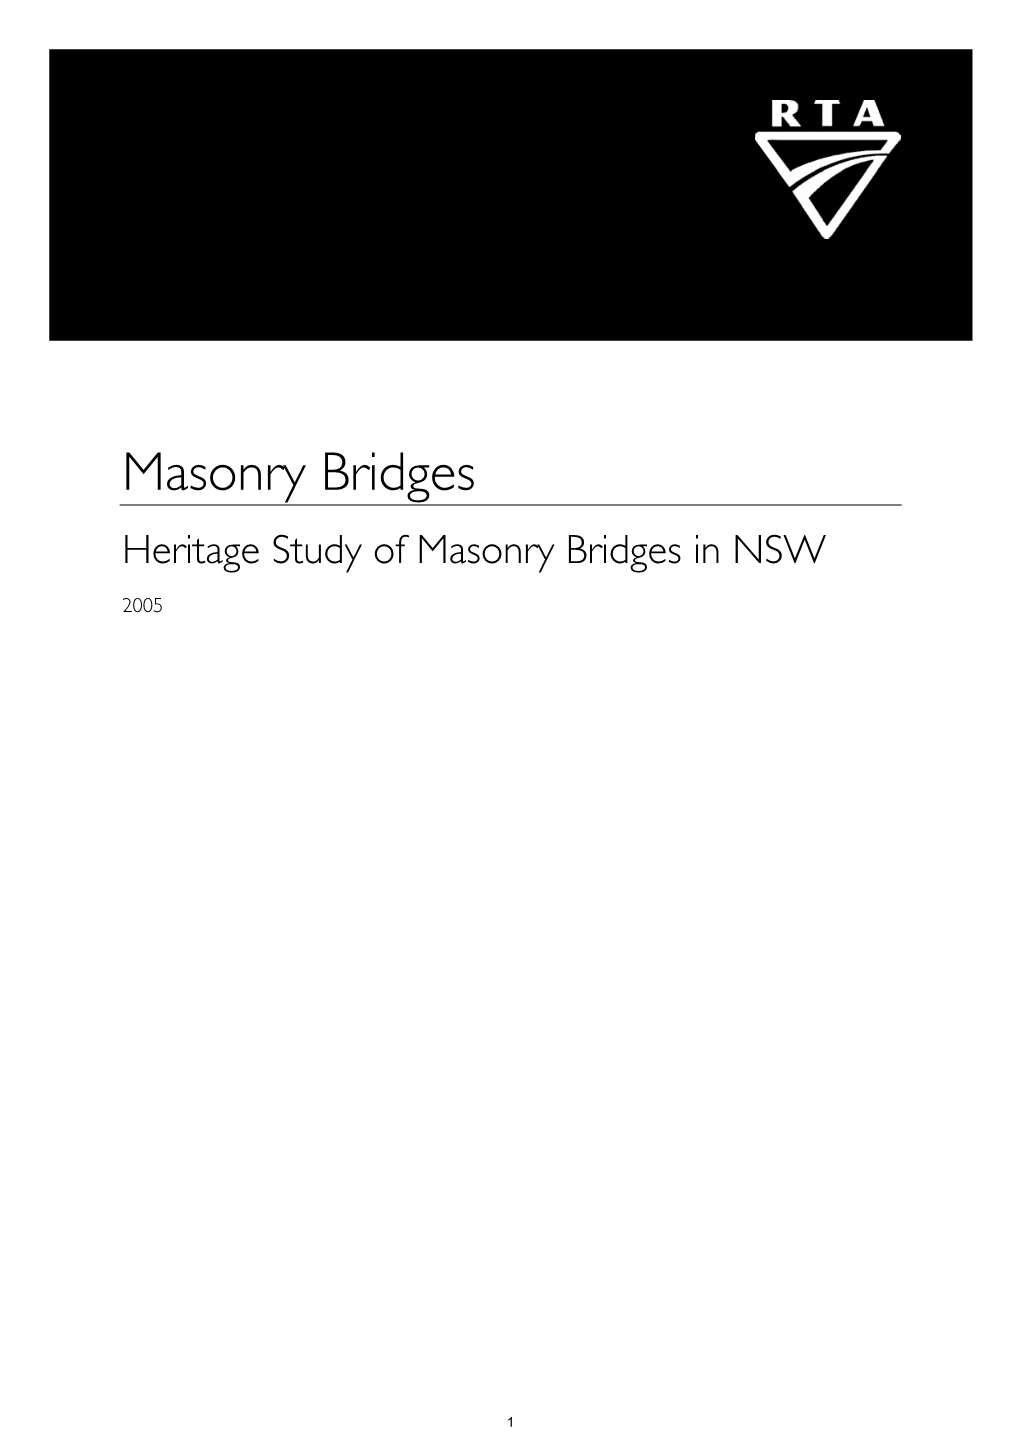 Masonry Bridges Heritage Study of Masonry Bridges in NSW